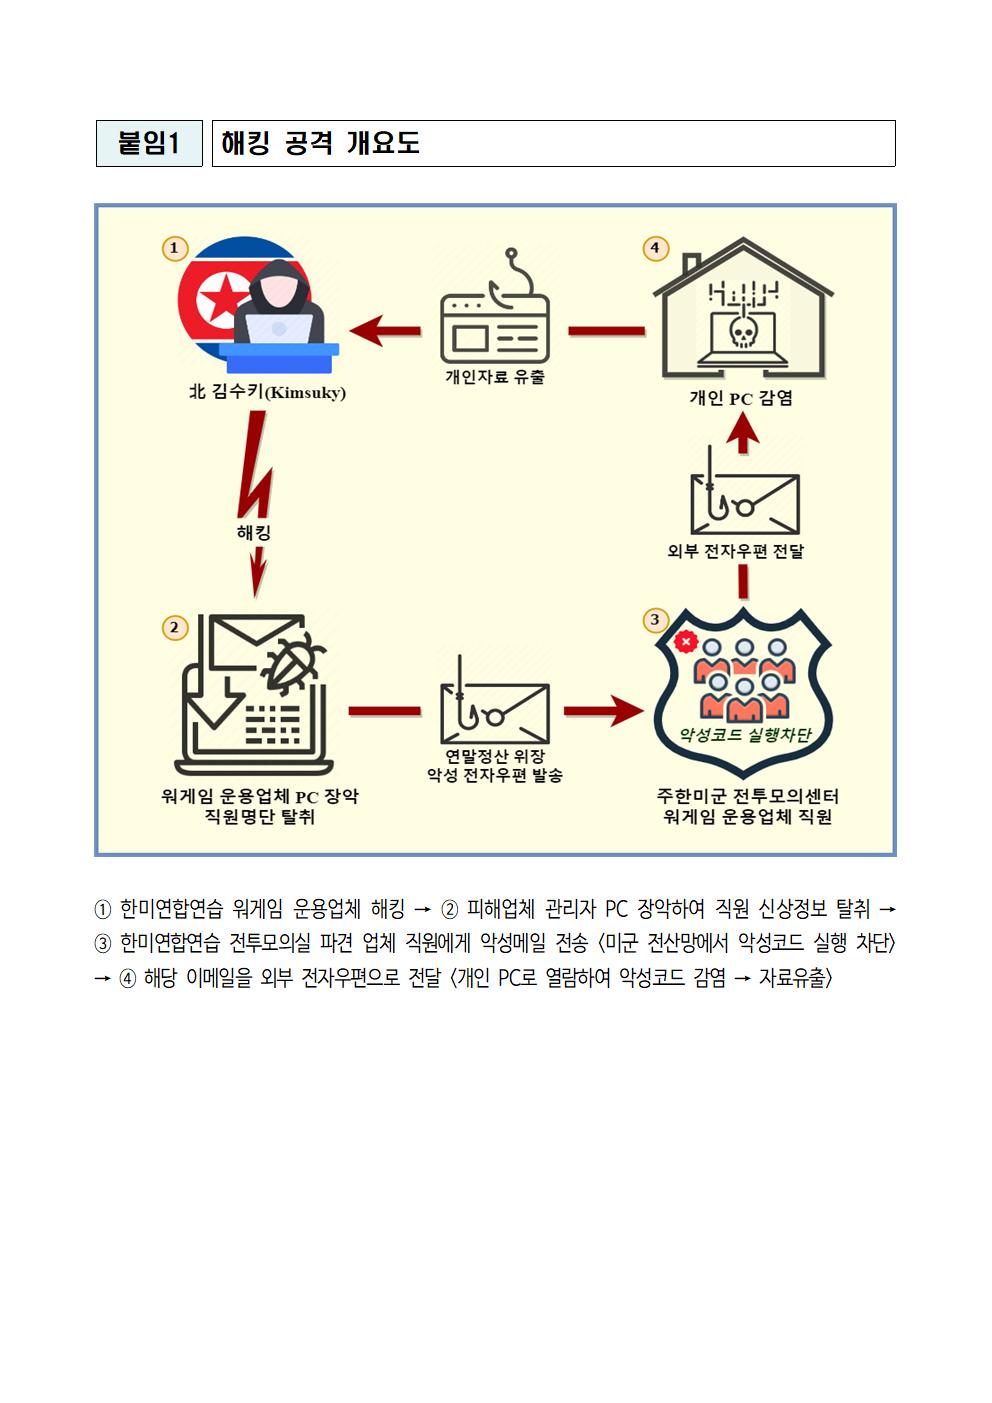 (보도자료) 한미연합연습 노린 북 ‘김수키’ 소행 사이버 공격 확인